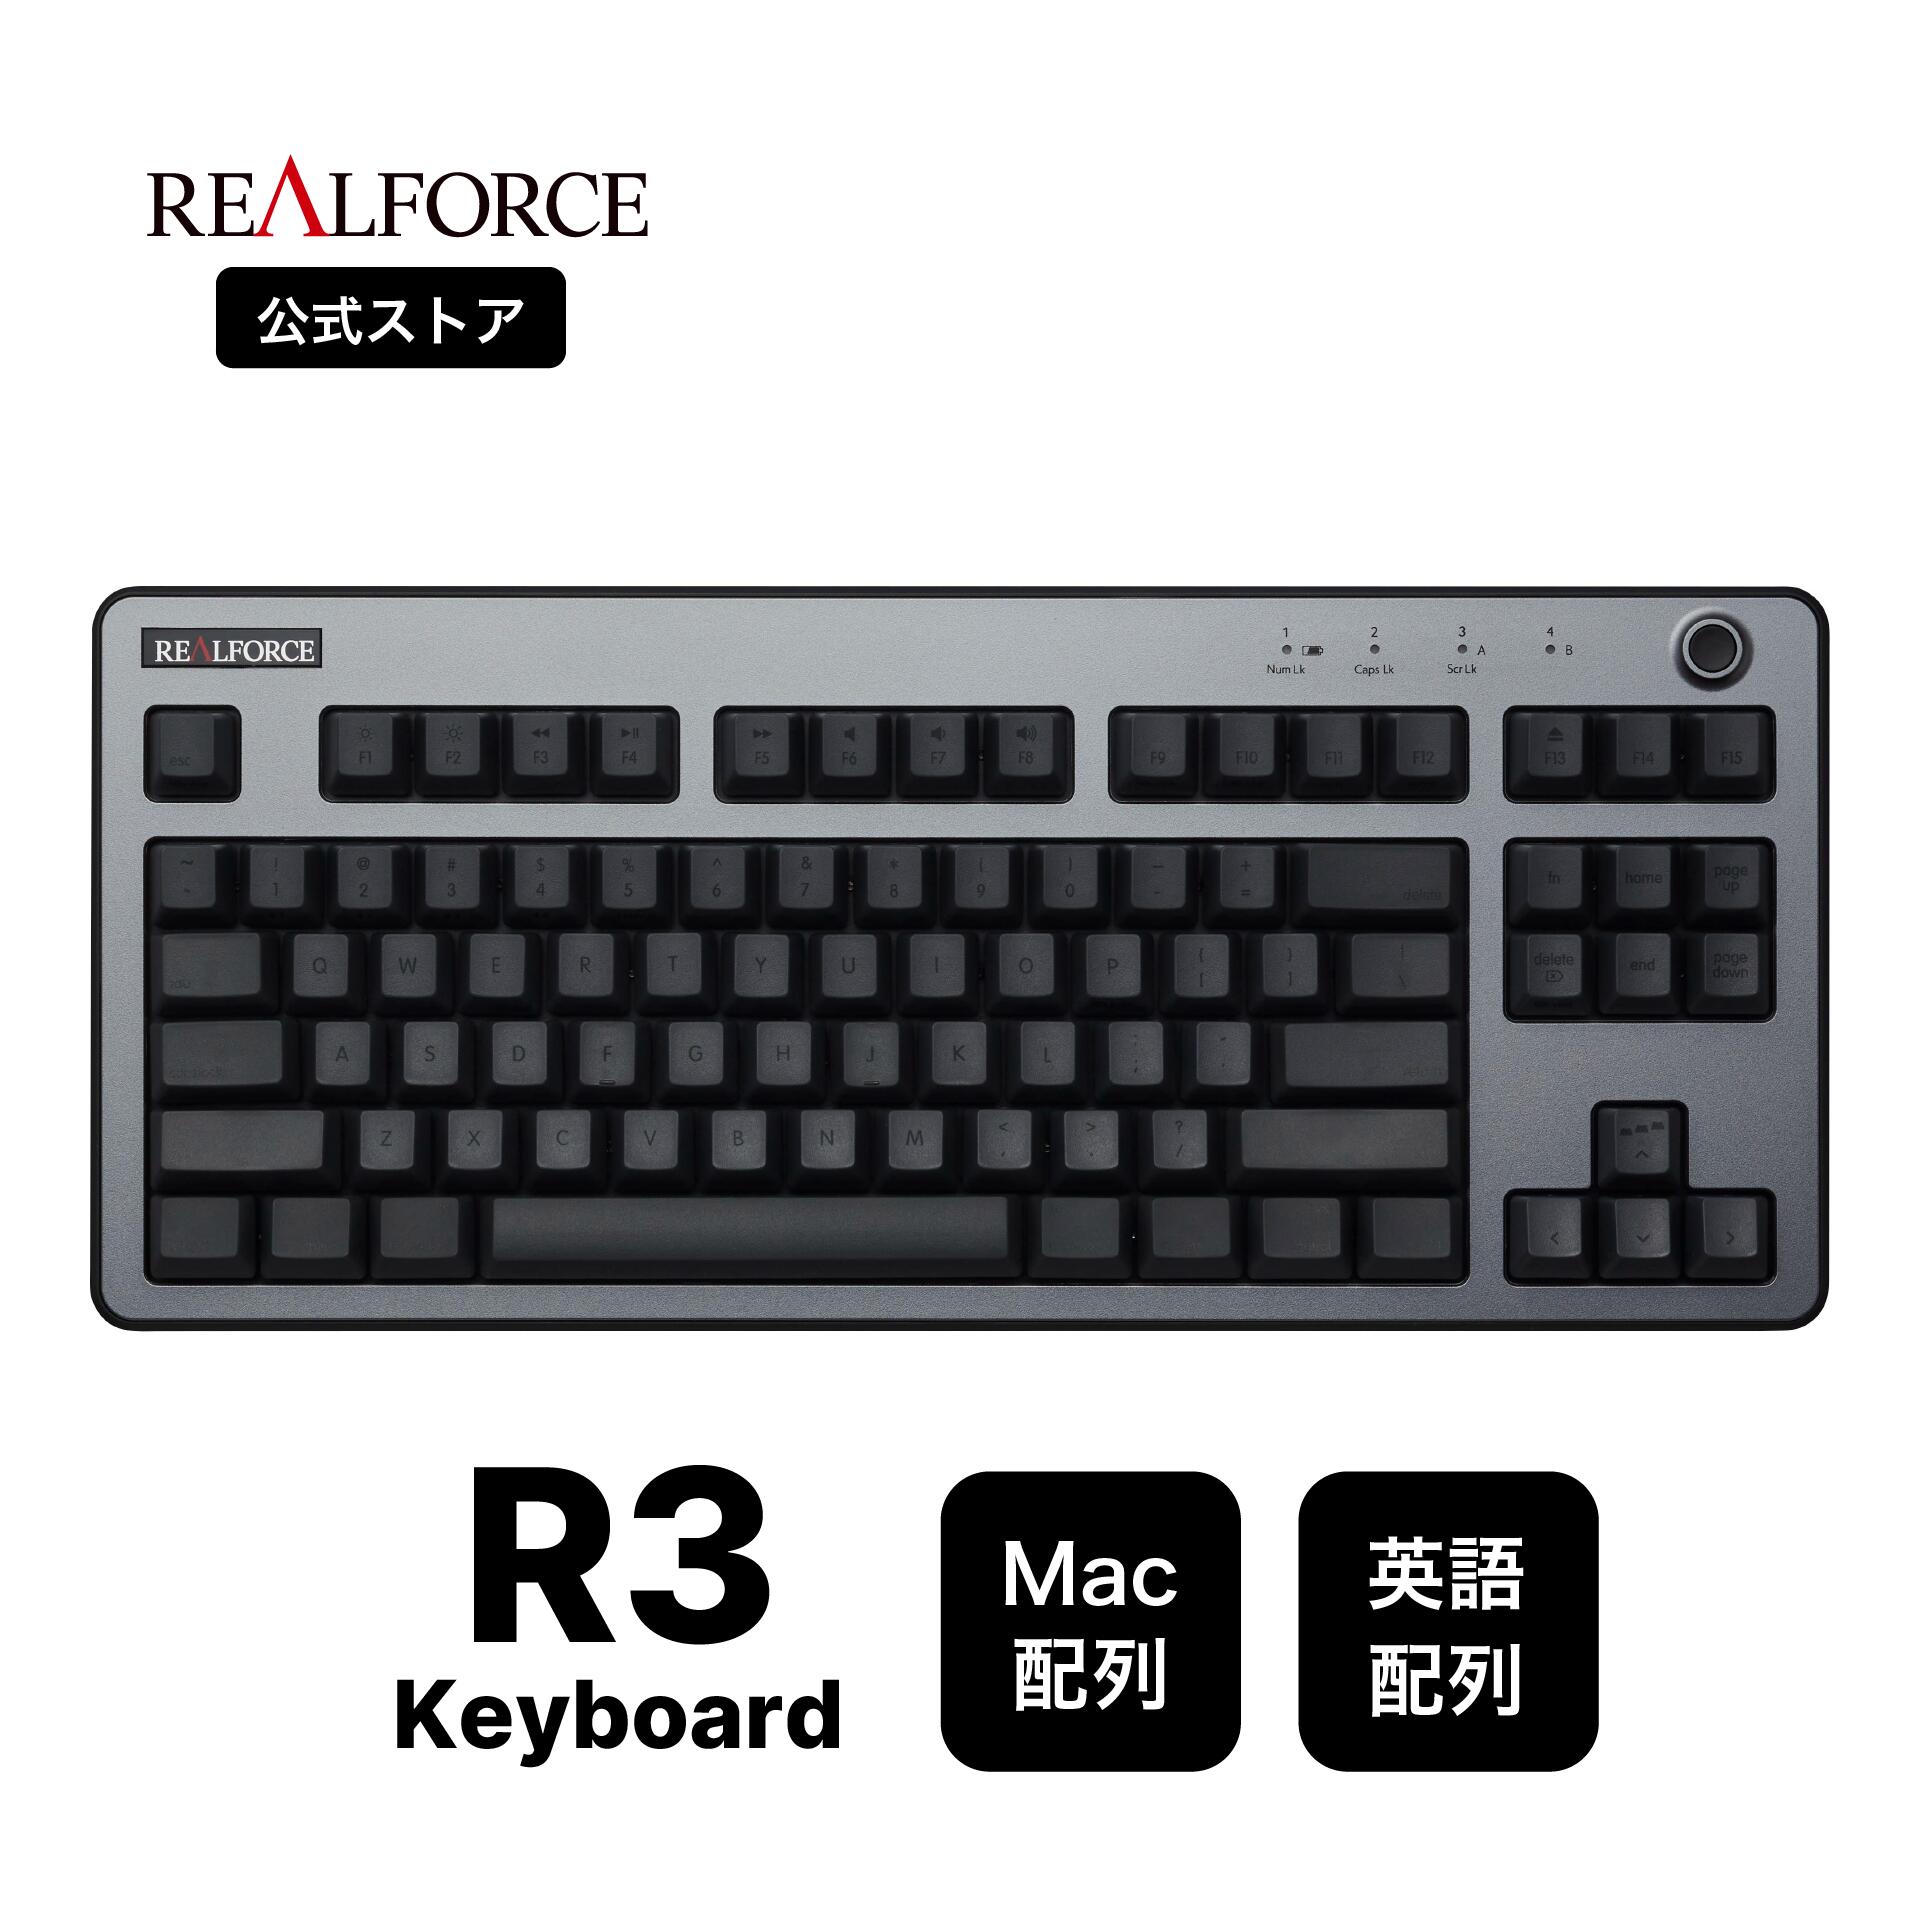 【公式】 REALFORCE R3 キーボード Mac <strong>英語</strong>配列 フルキーボード テンキーレス ダークシルバー ブラック 45g Bluetooth USB 静音 昇華印刷 ワイヤレス ハイブリッドモデル 無線 東プレ